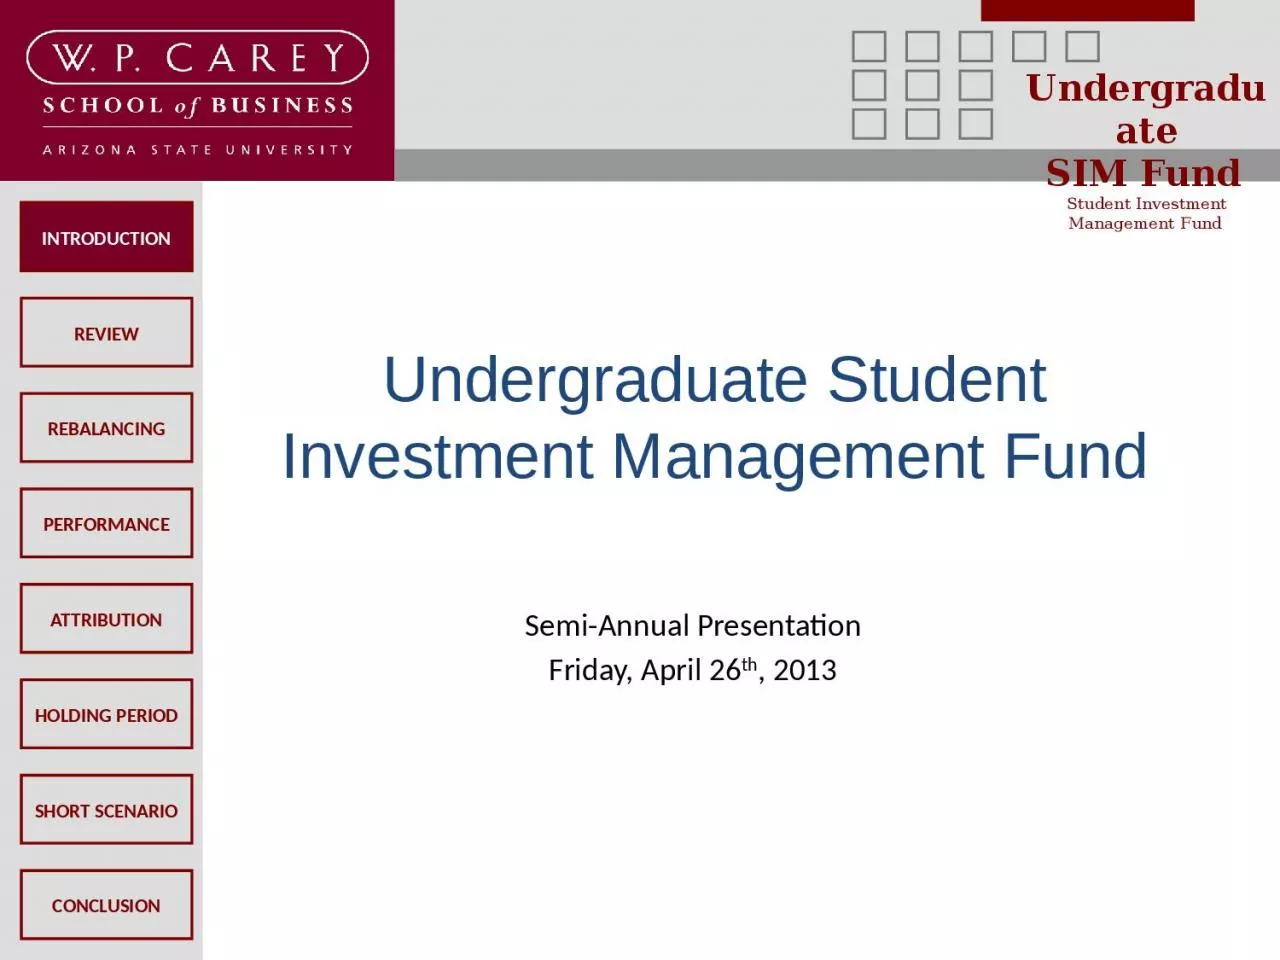 Undergraduate Student Investment Management Fund